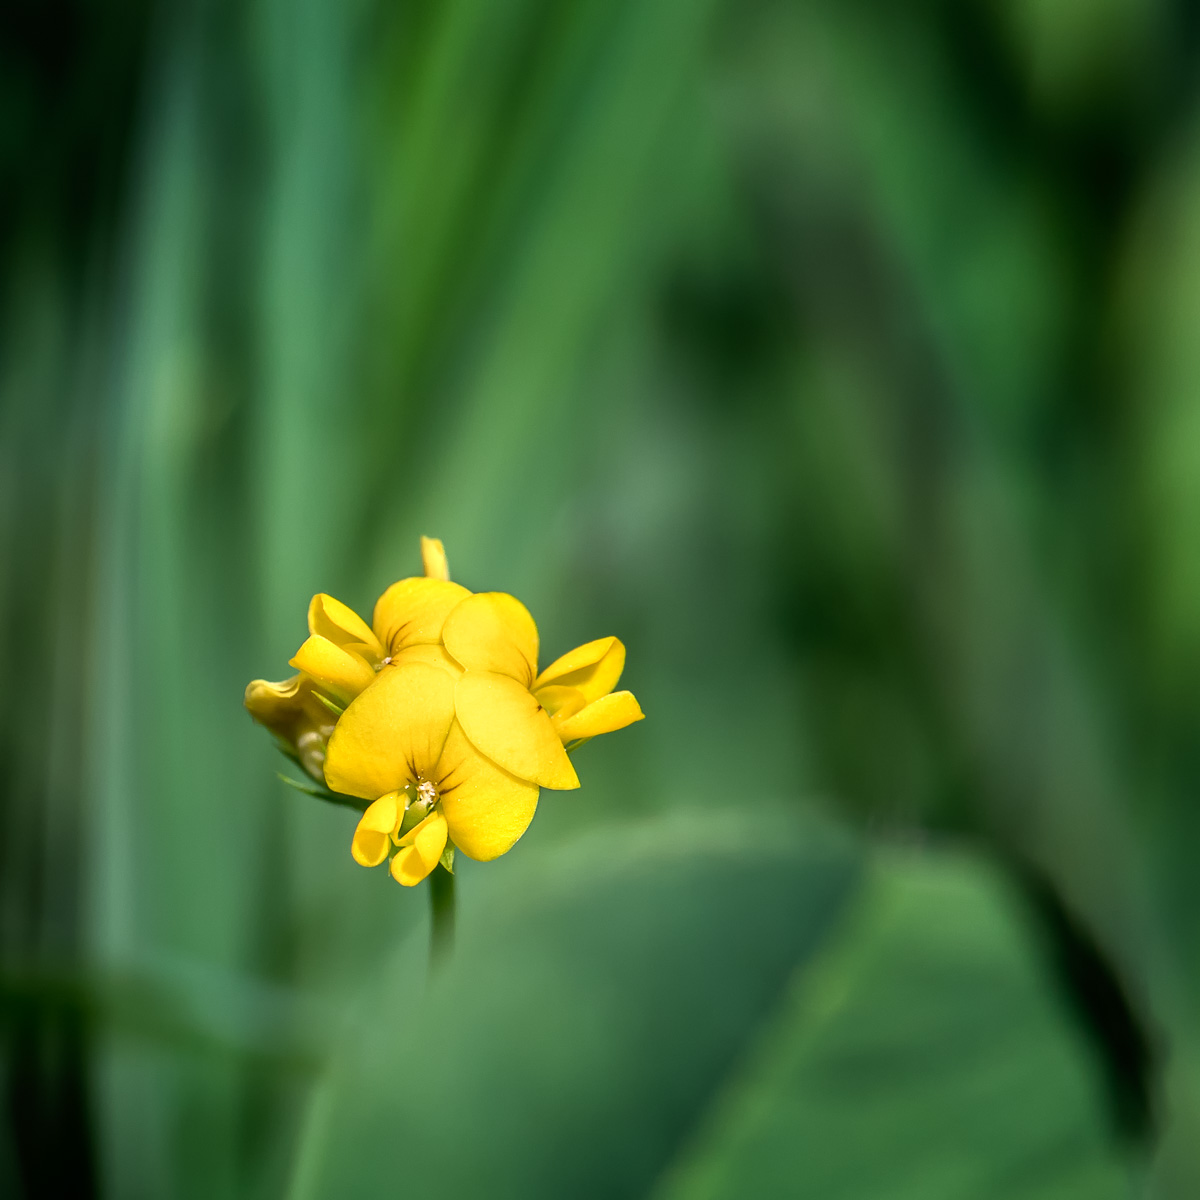 Gros plan sur une fleur jaune de luzerne hérissée.